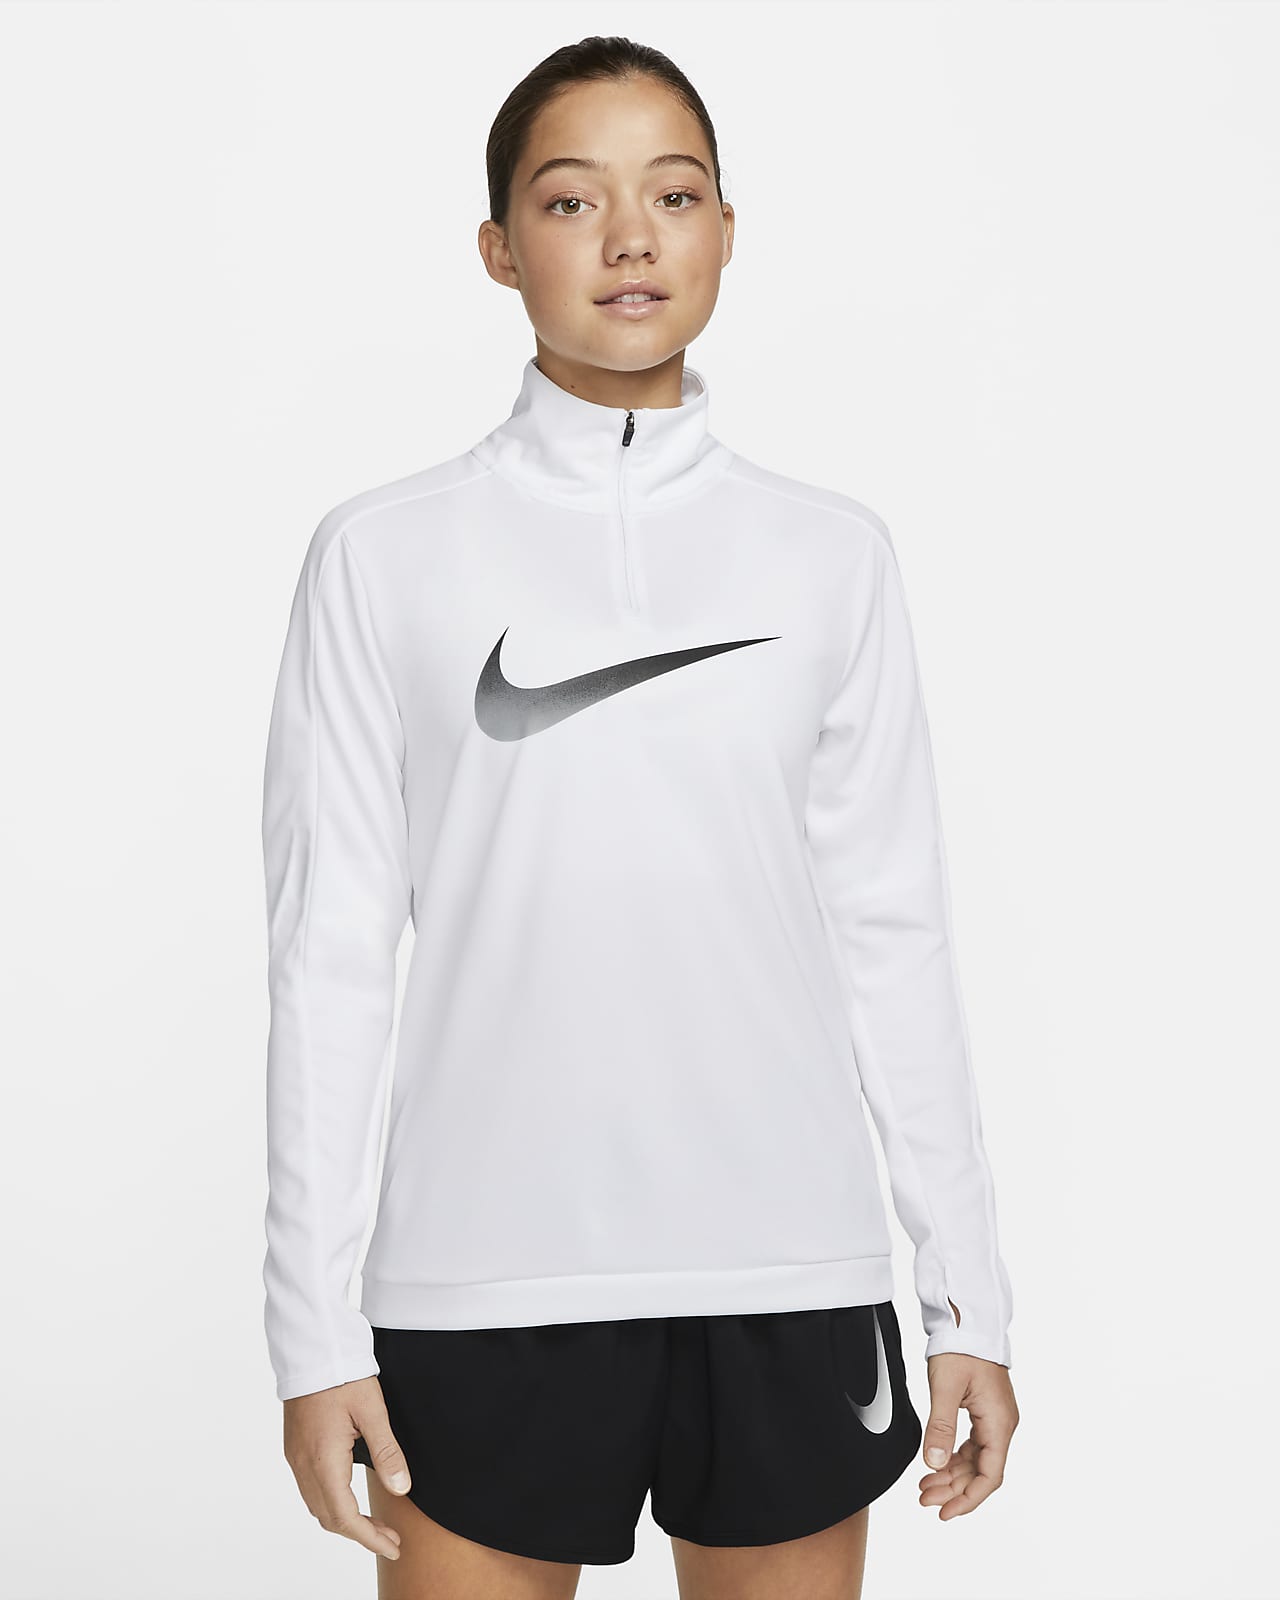 Dámská běžecká střední vrstva Nike Dri-FIT Swoosh s dlouhým rukávem a čtvrtinovým zipem